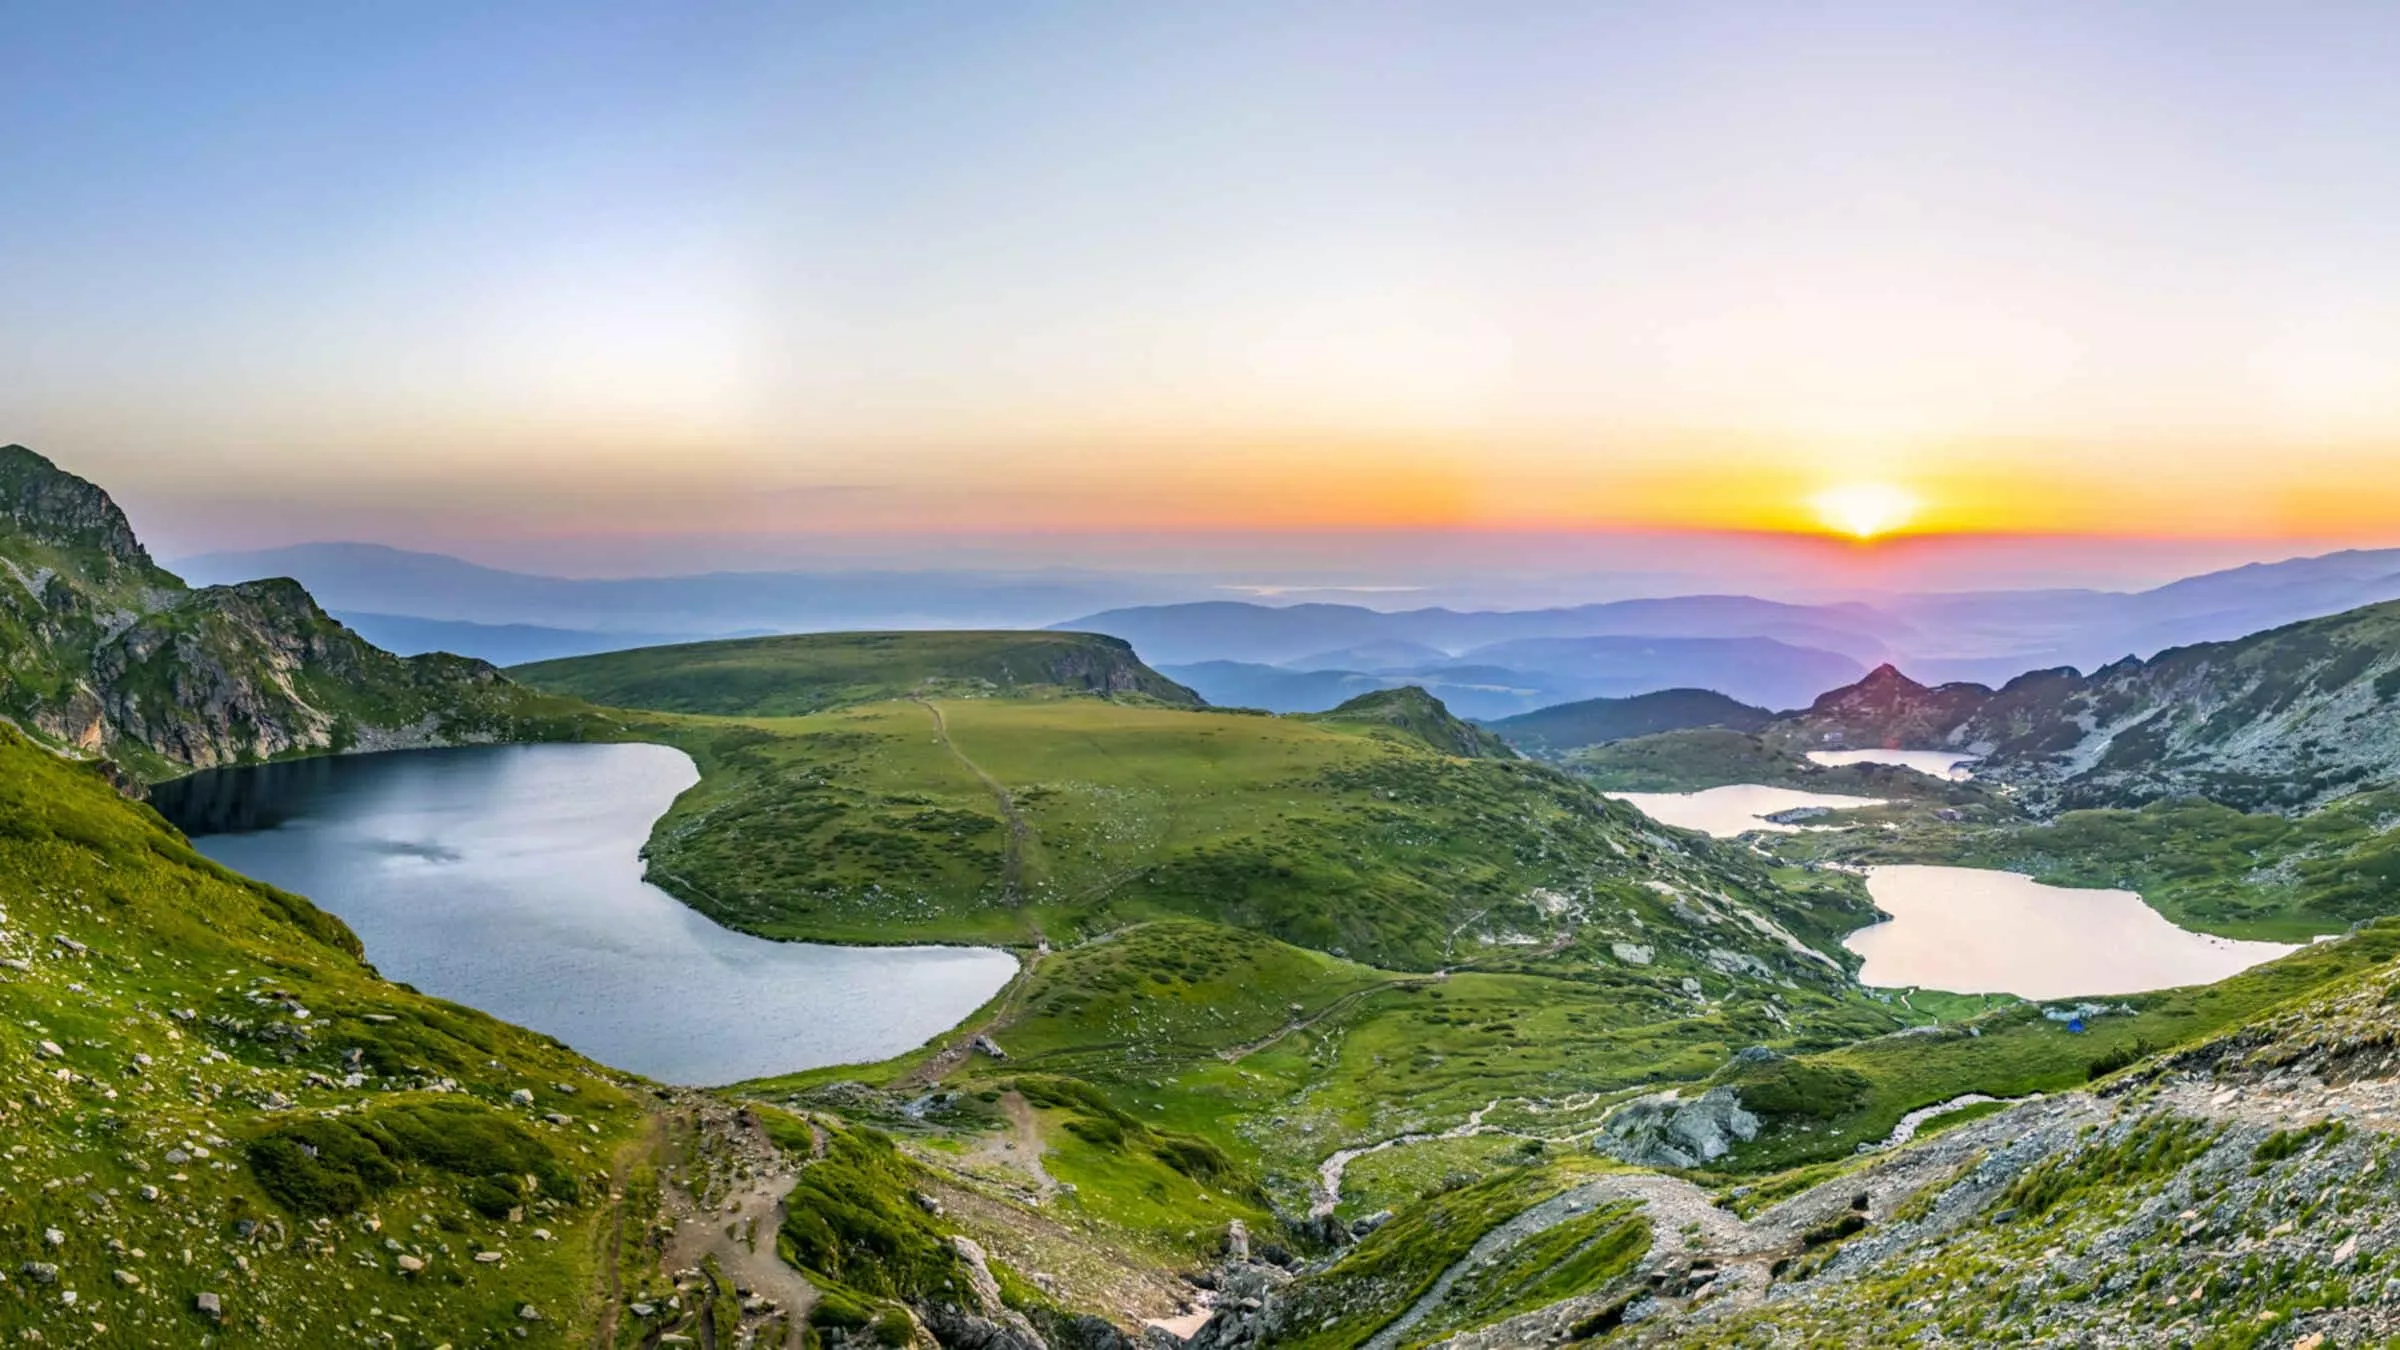 أشهر الأماكن السياحية في بلغاريا: أضيفيها إلى قائمة وجهاتكِ المقبلة